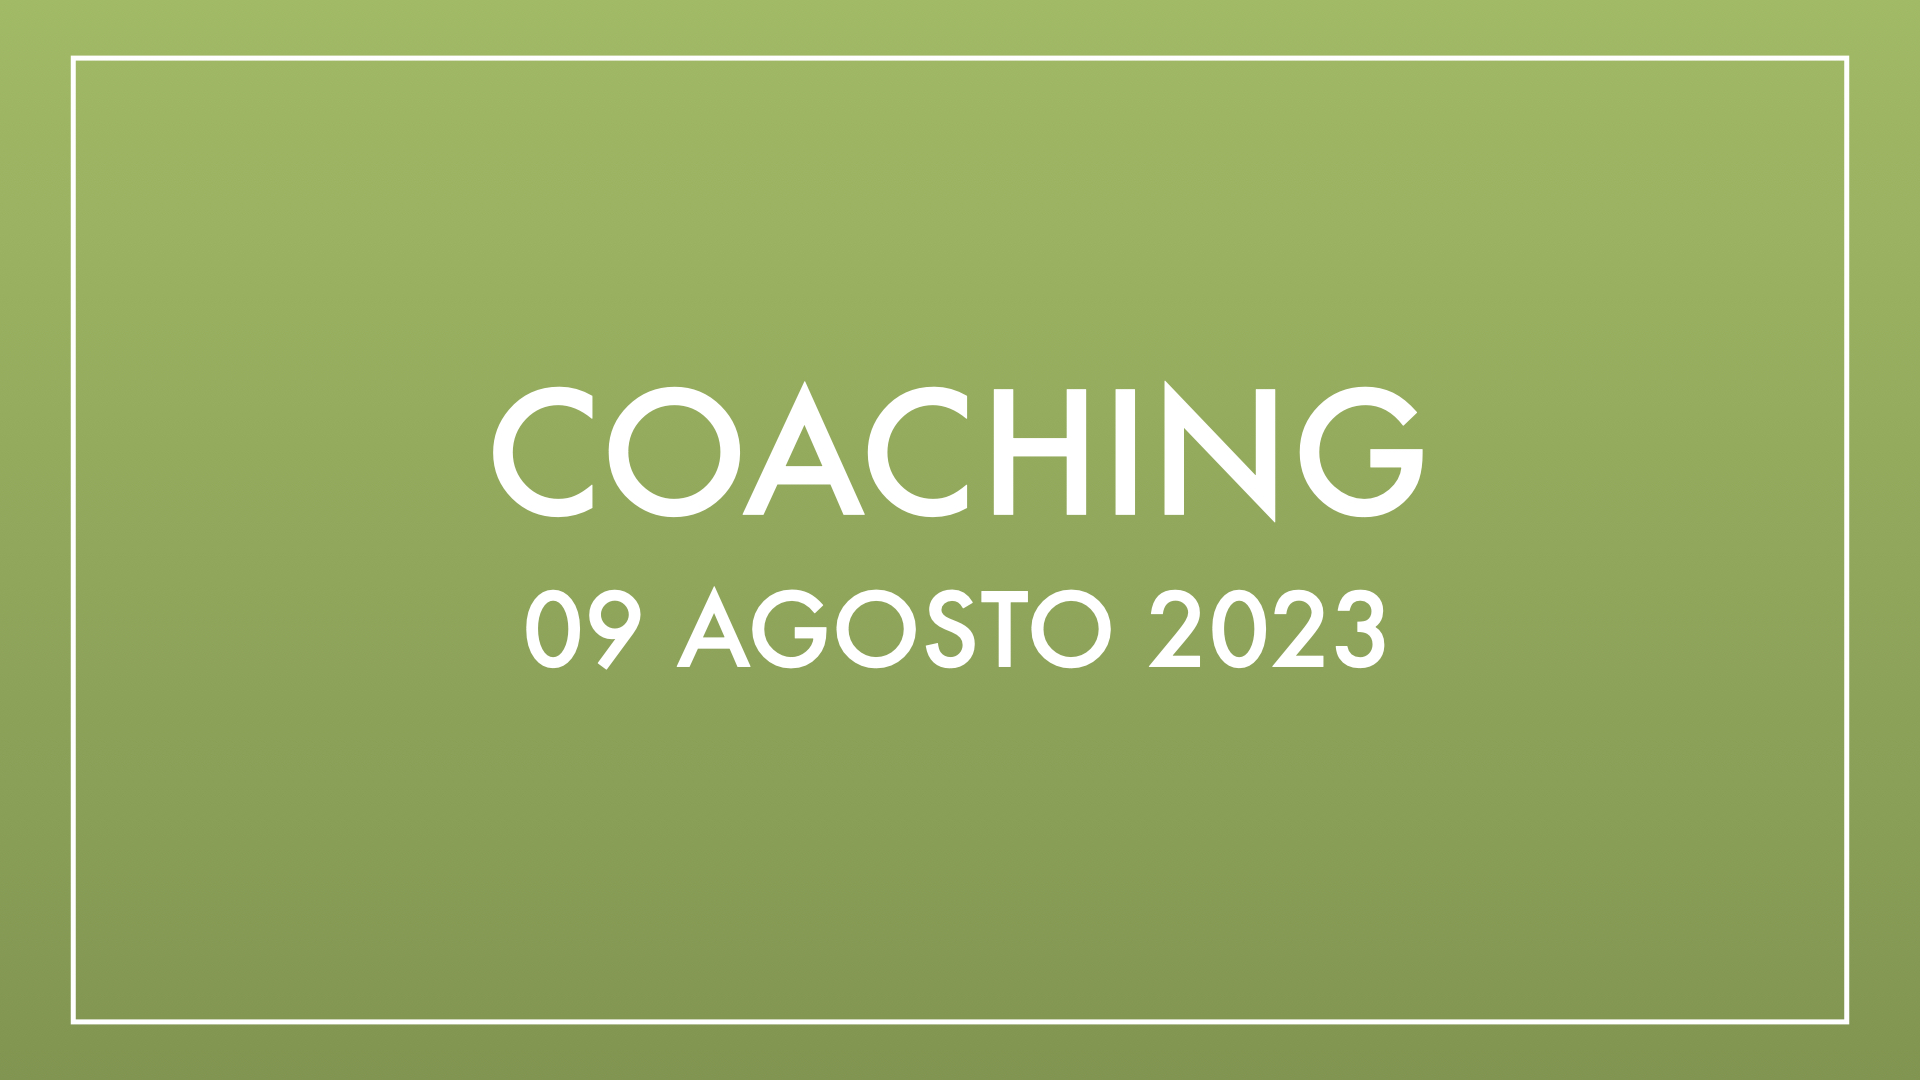 Coaching 09 agosto 2023